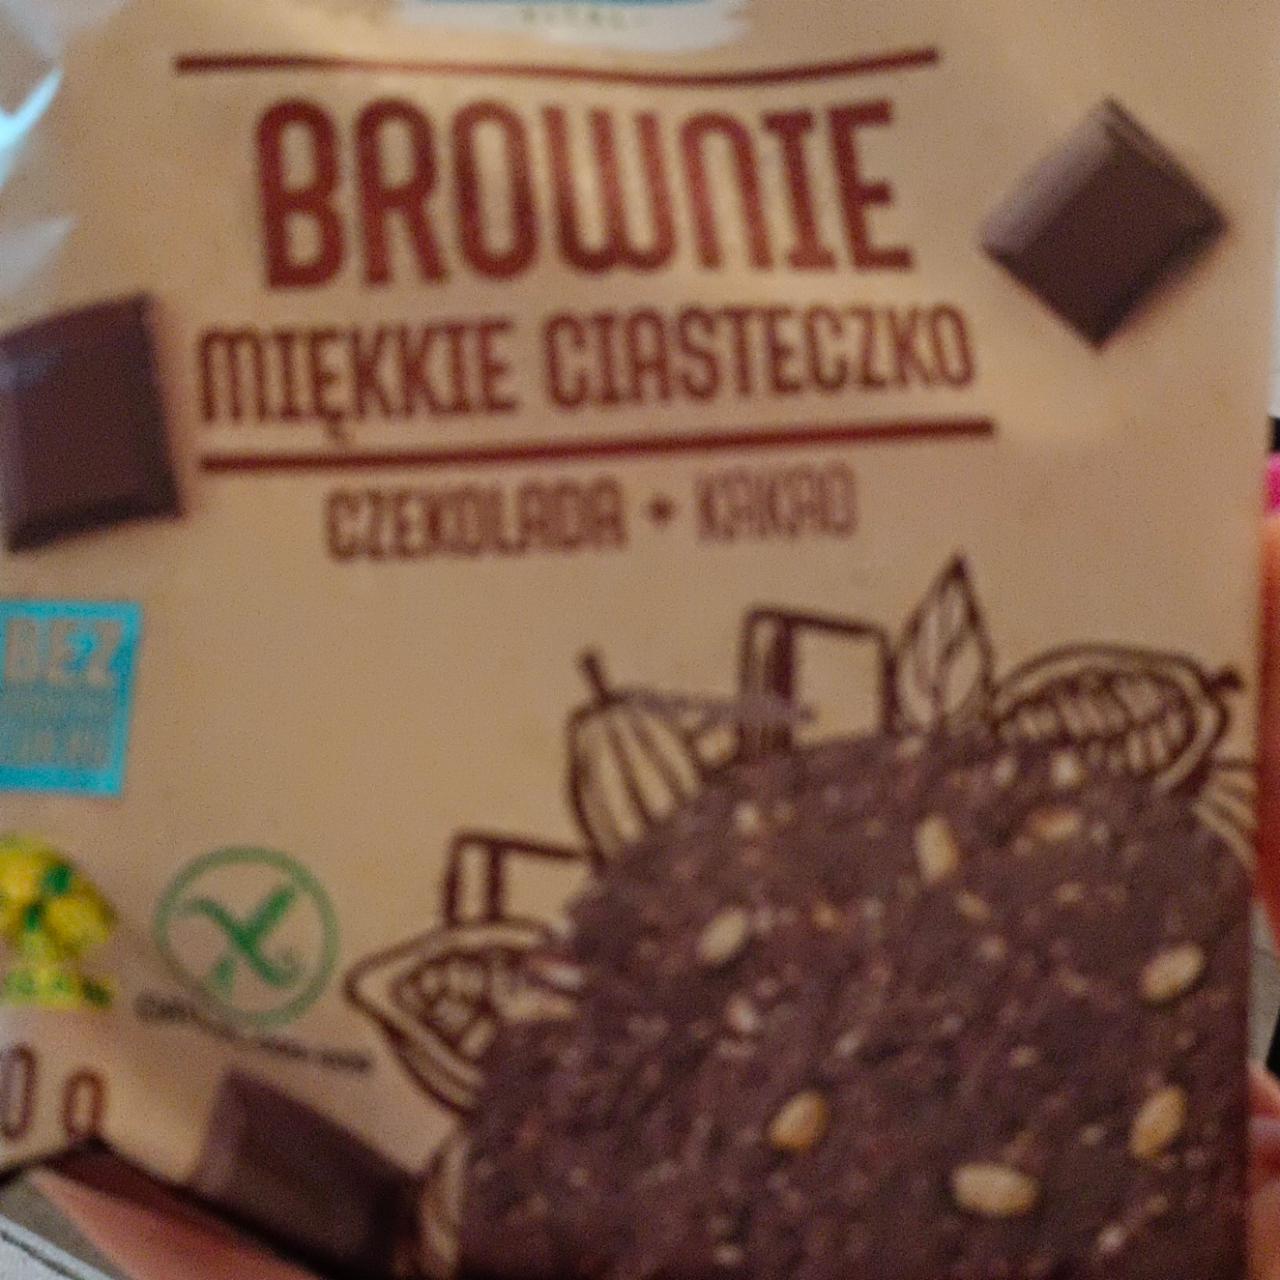 Fotografie - Brownie Miękkie ciasteczko Czekolada + Kakao Frank & Oli